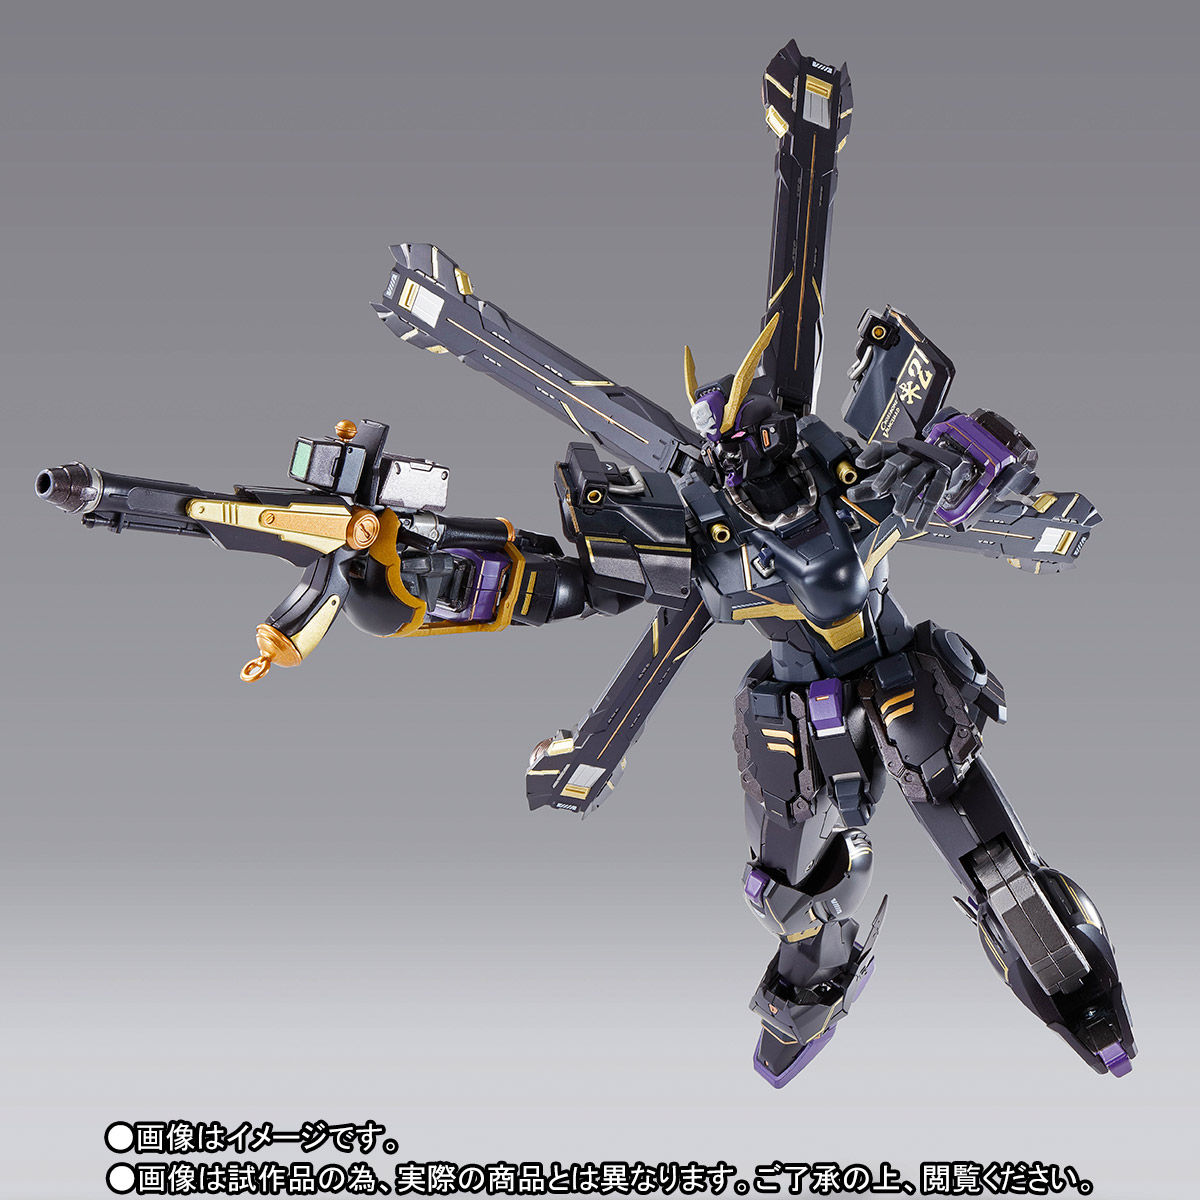 【限定販売】METAL BUILD『クロスボーン・ガンダムX2』機動戦士クロスボーン・ガンダム 可動フィギュア-006